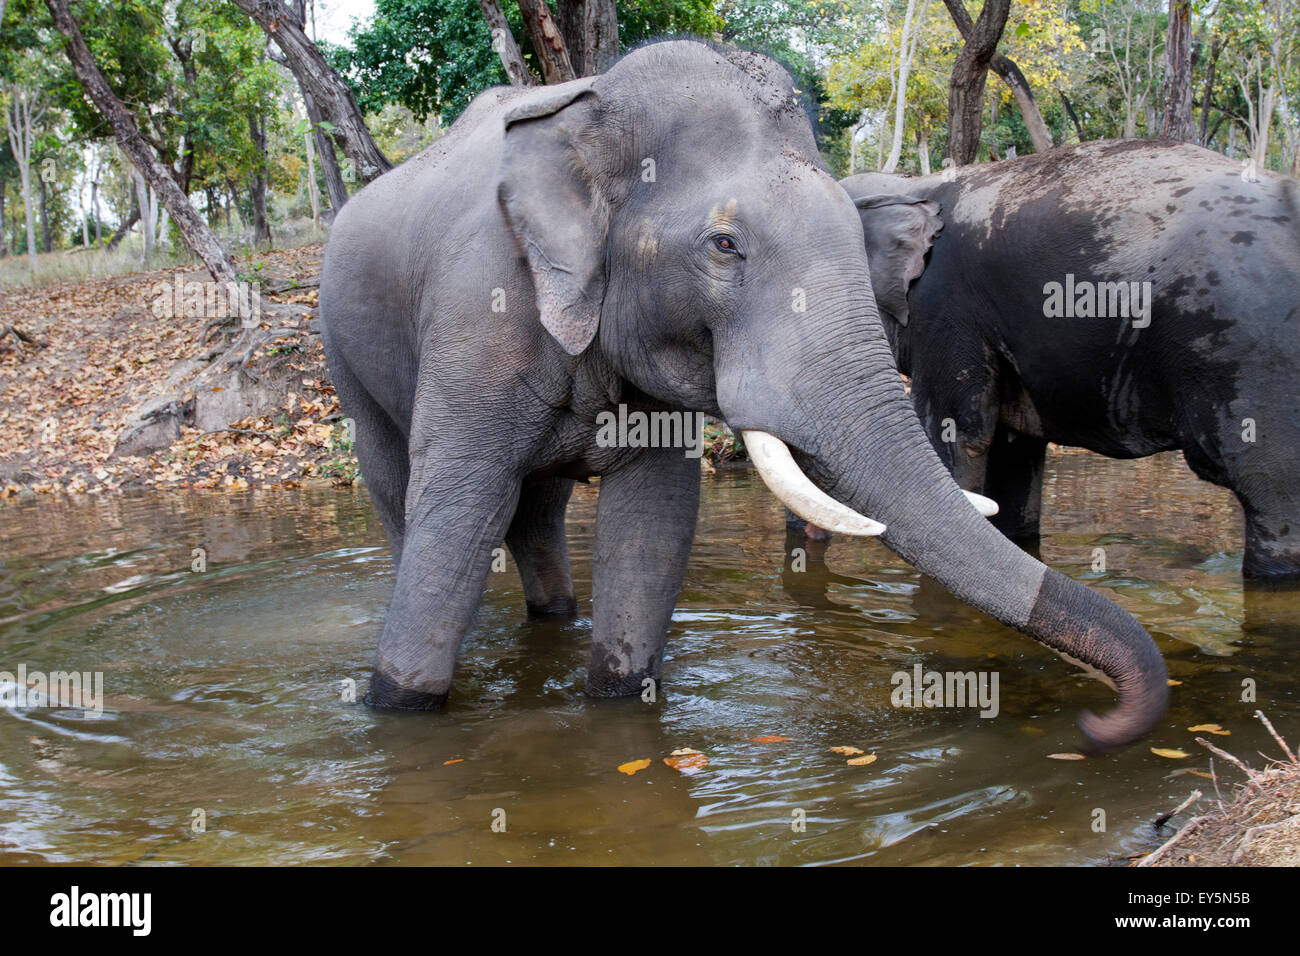 Baño de elefantes asiáticos - Bandhavgarth India Foto de stock